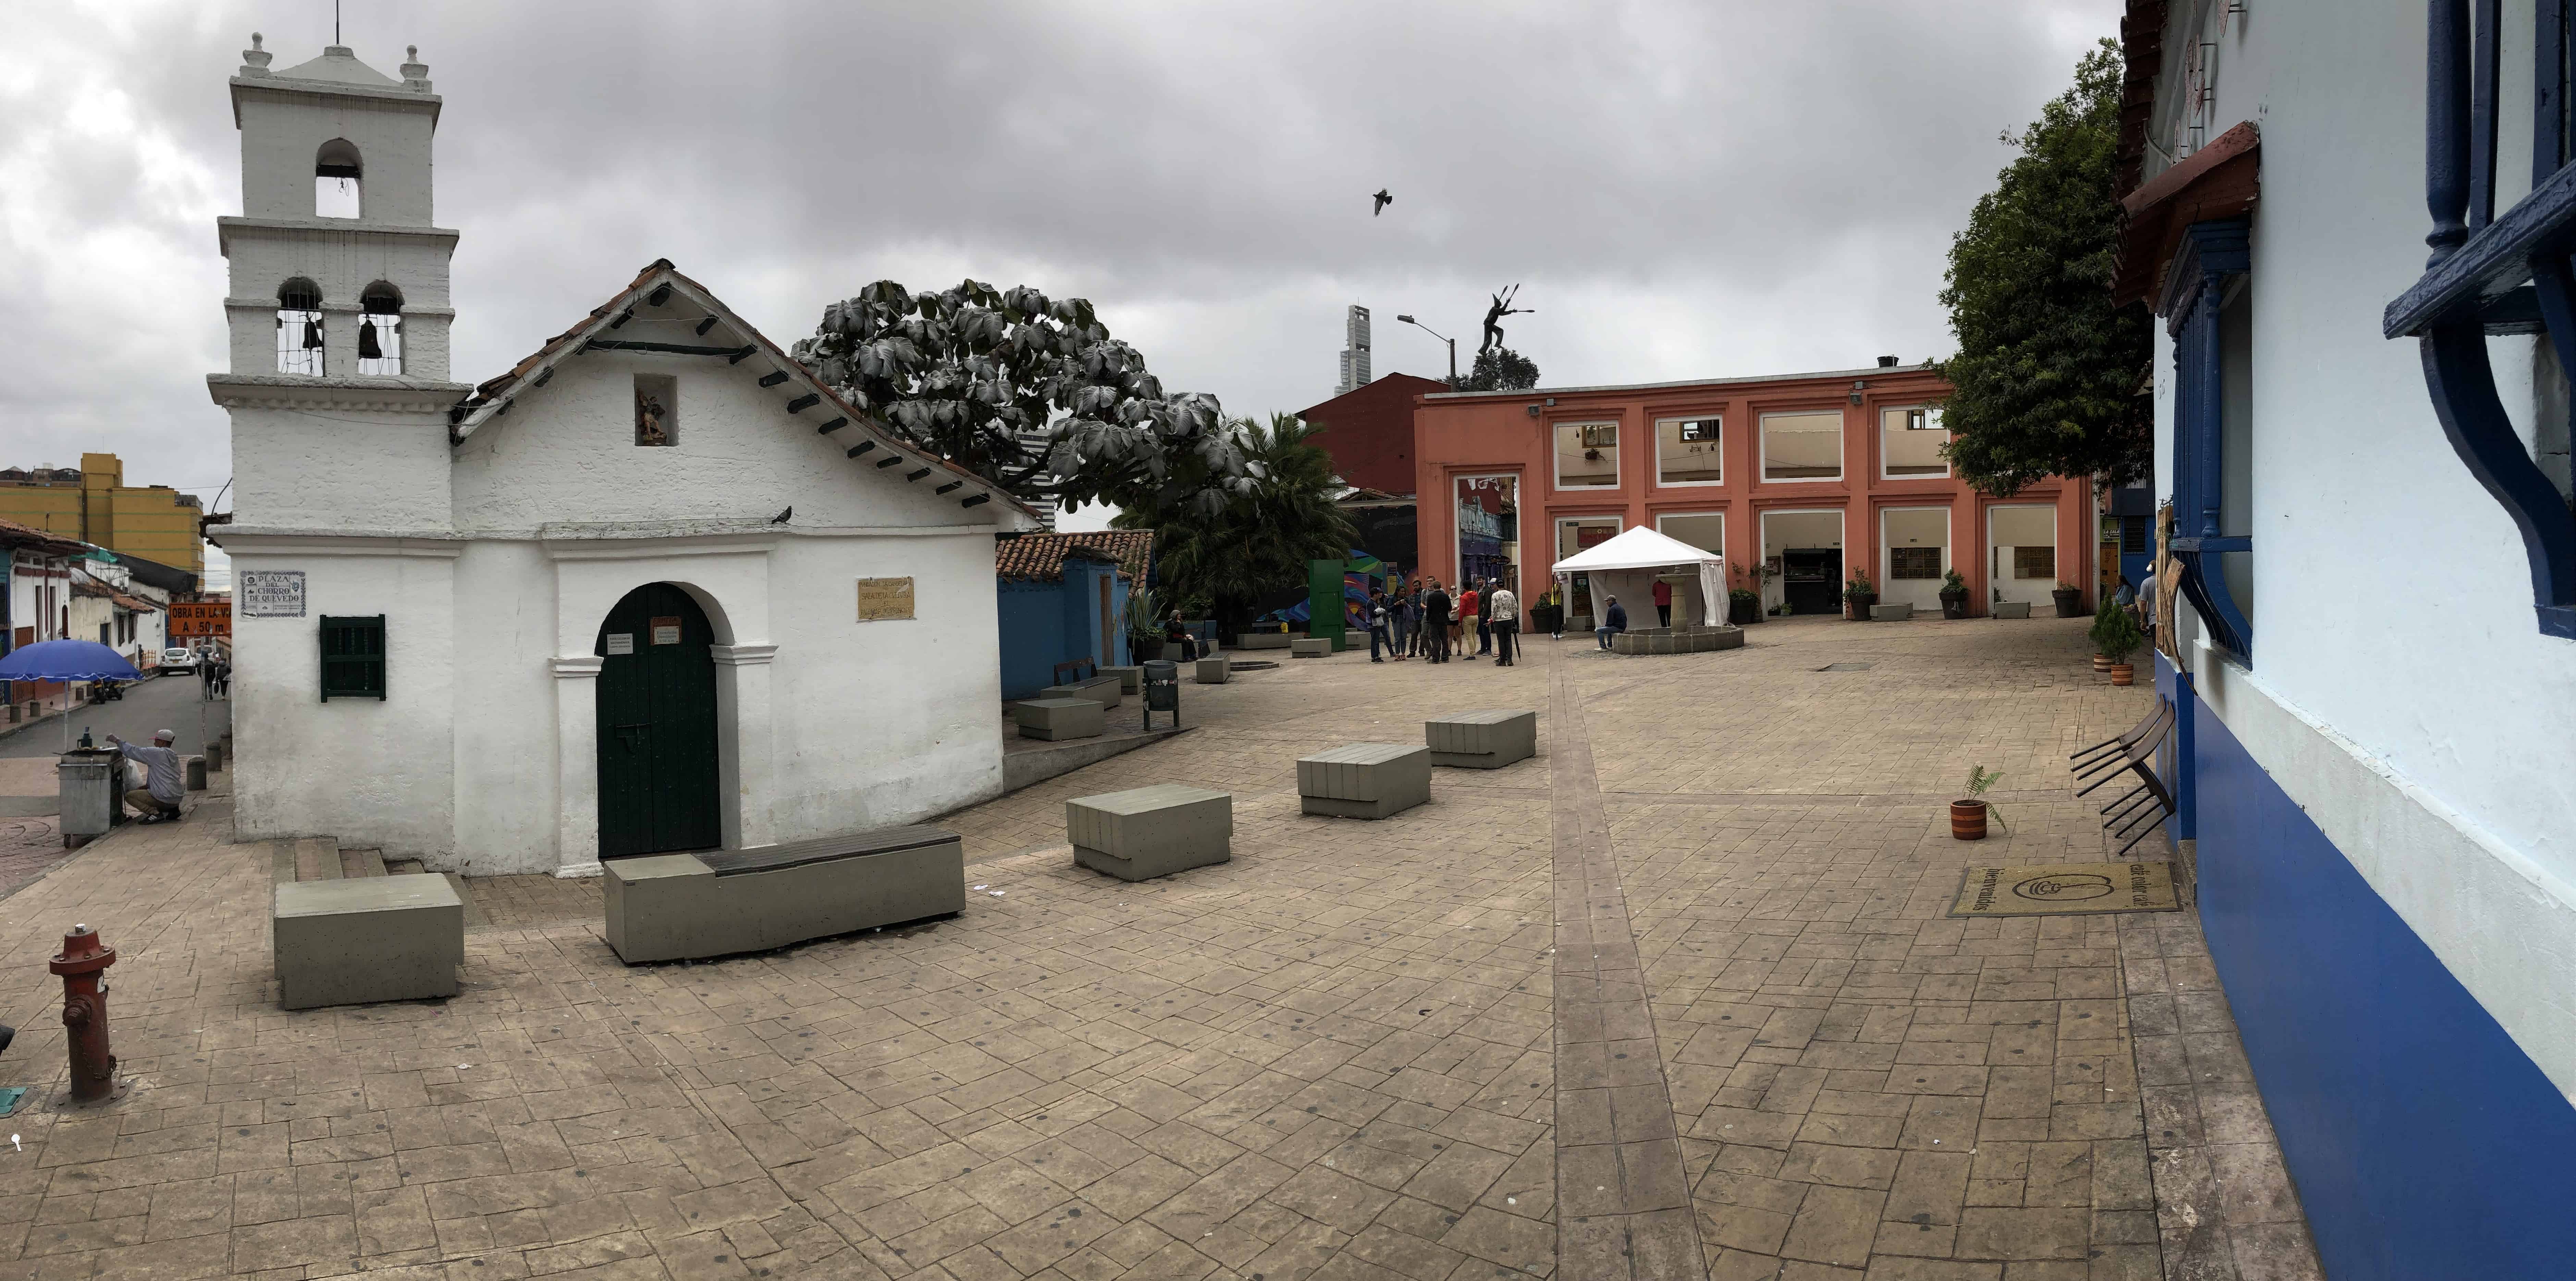 Chorro de Quevedo in La Candelaria, Bogotá, Colombia